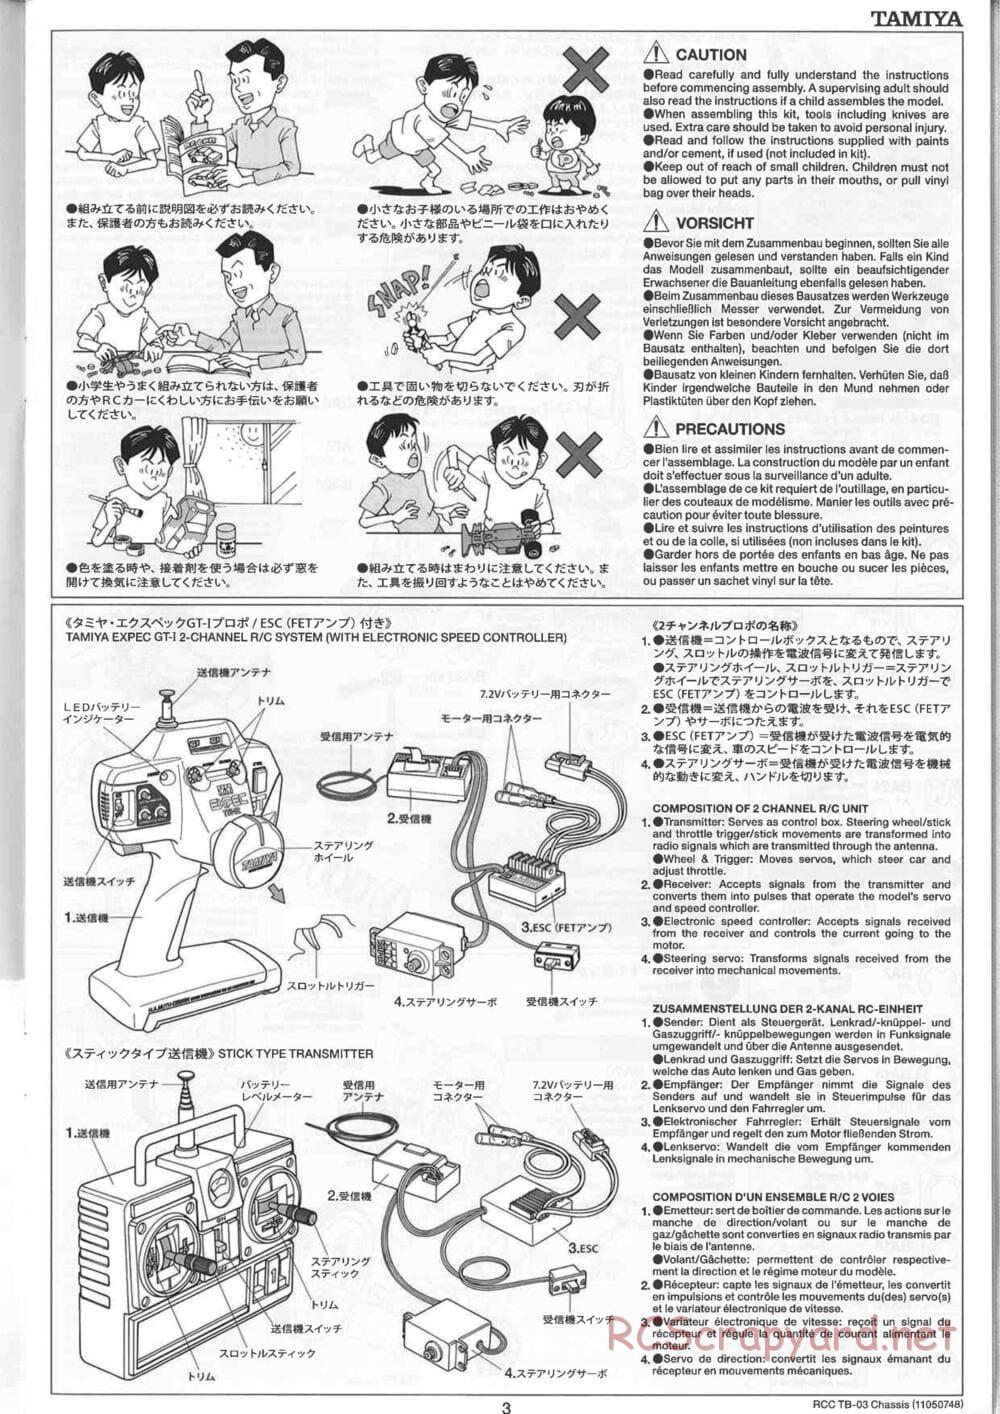 Tamiya - TB-03 Chassis - Manual - Page 3